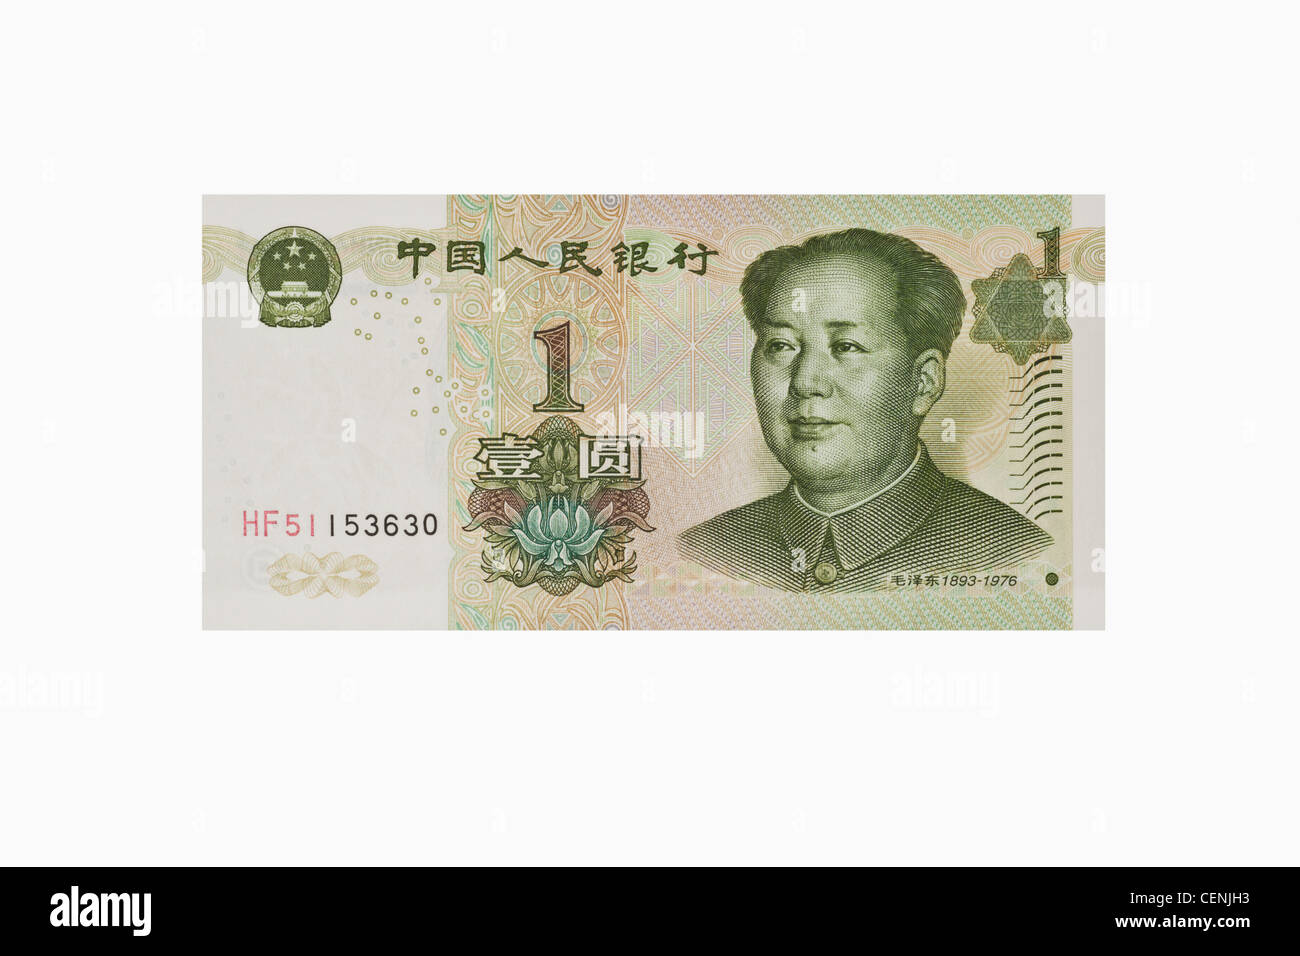 1 yuan bill con il ritratto di Mao Zedong. Il renminbi, la valuta cinese, è stato introdotto nel 1949. Foto Stock